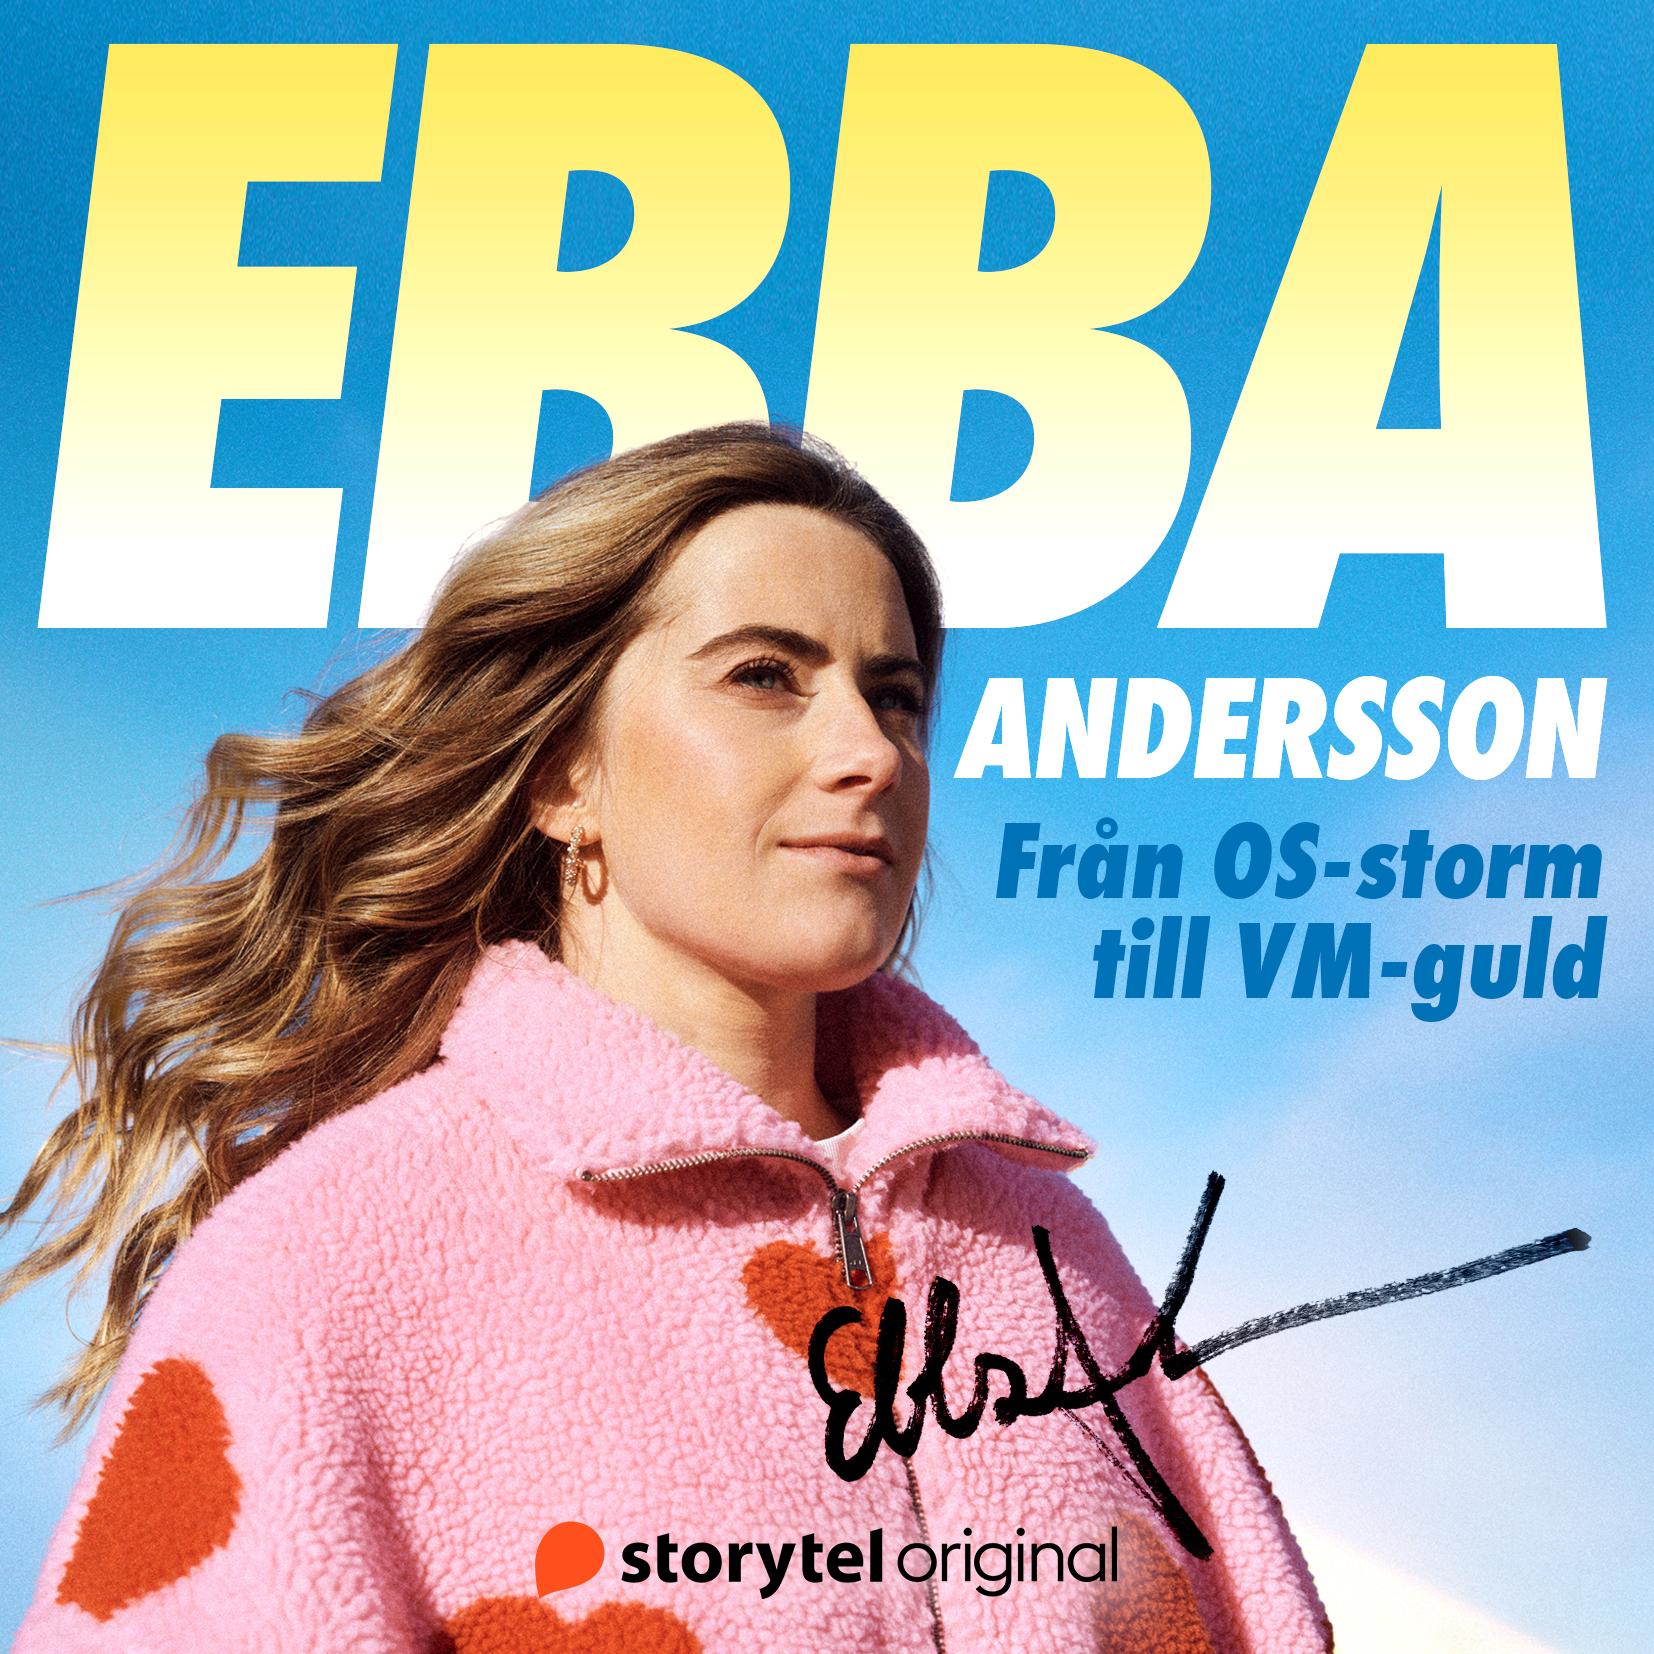 Ebba Anderssons självbiografi ”Från OS-storm till VM-guld” släpps på Storytel 30 april.